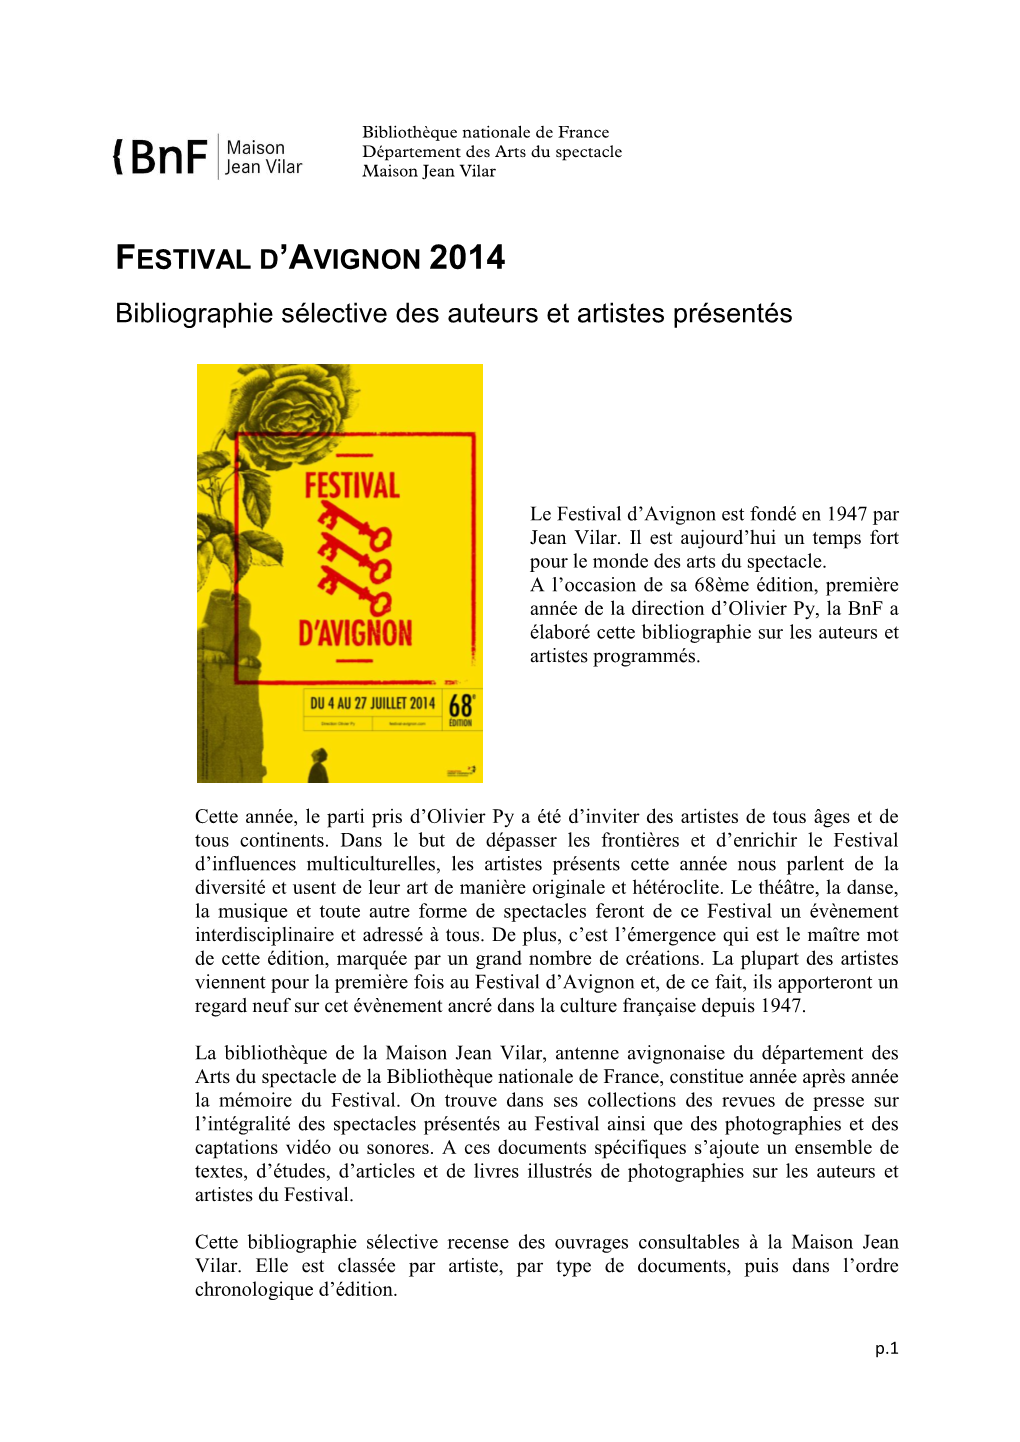 Bibliographie Des Artistes Du Festival D'avignon 2014